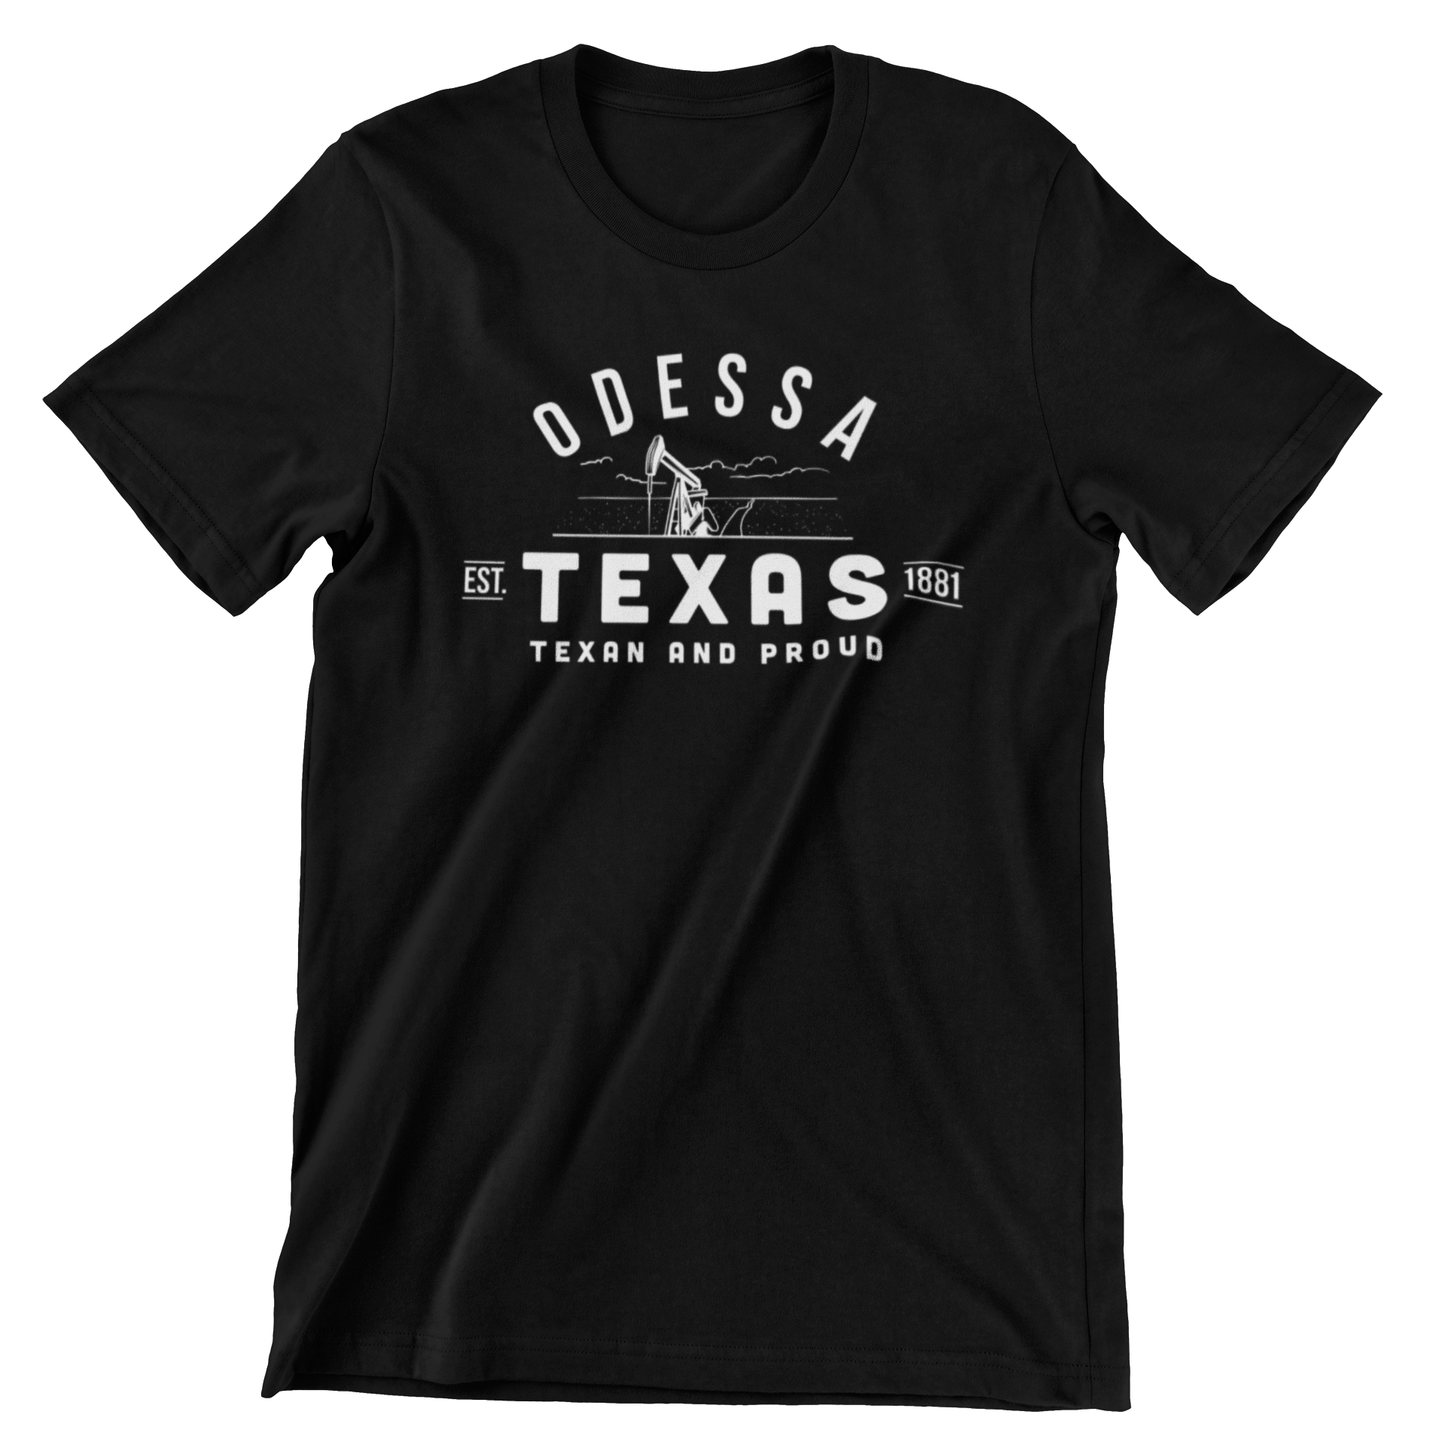 Odessa Texas T-shirt